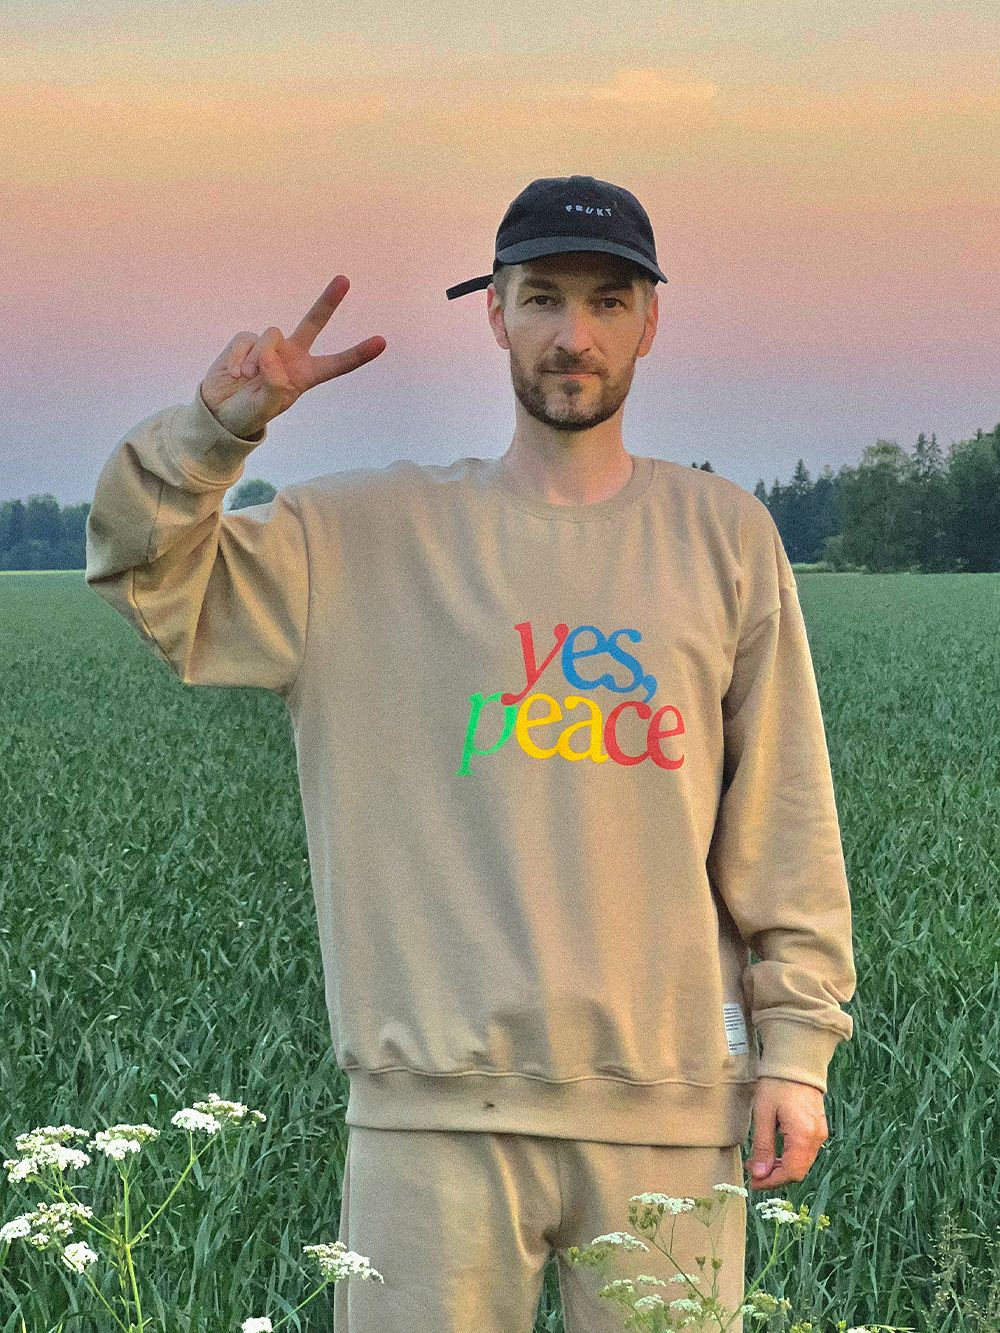 Kuva, jossa Tomi Leppänen päällään vaalea collegepaita, jossa lukee värikkäin kirjaimin "yes, peace".